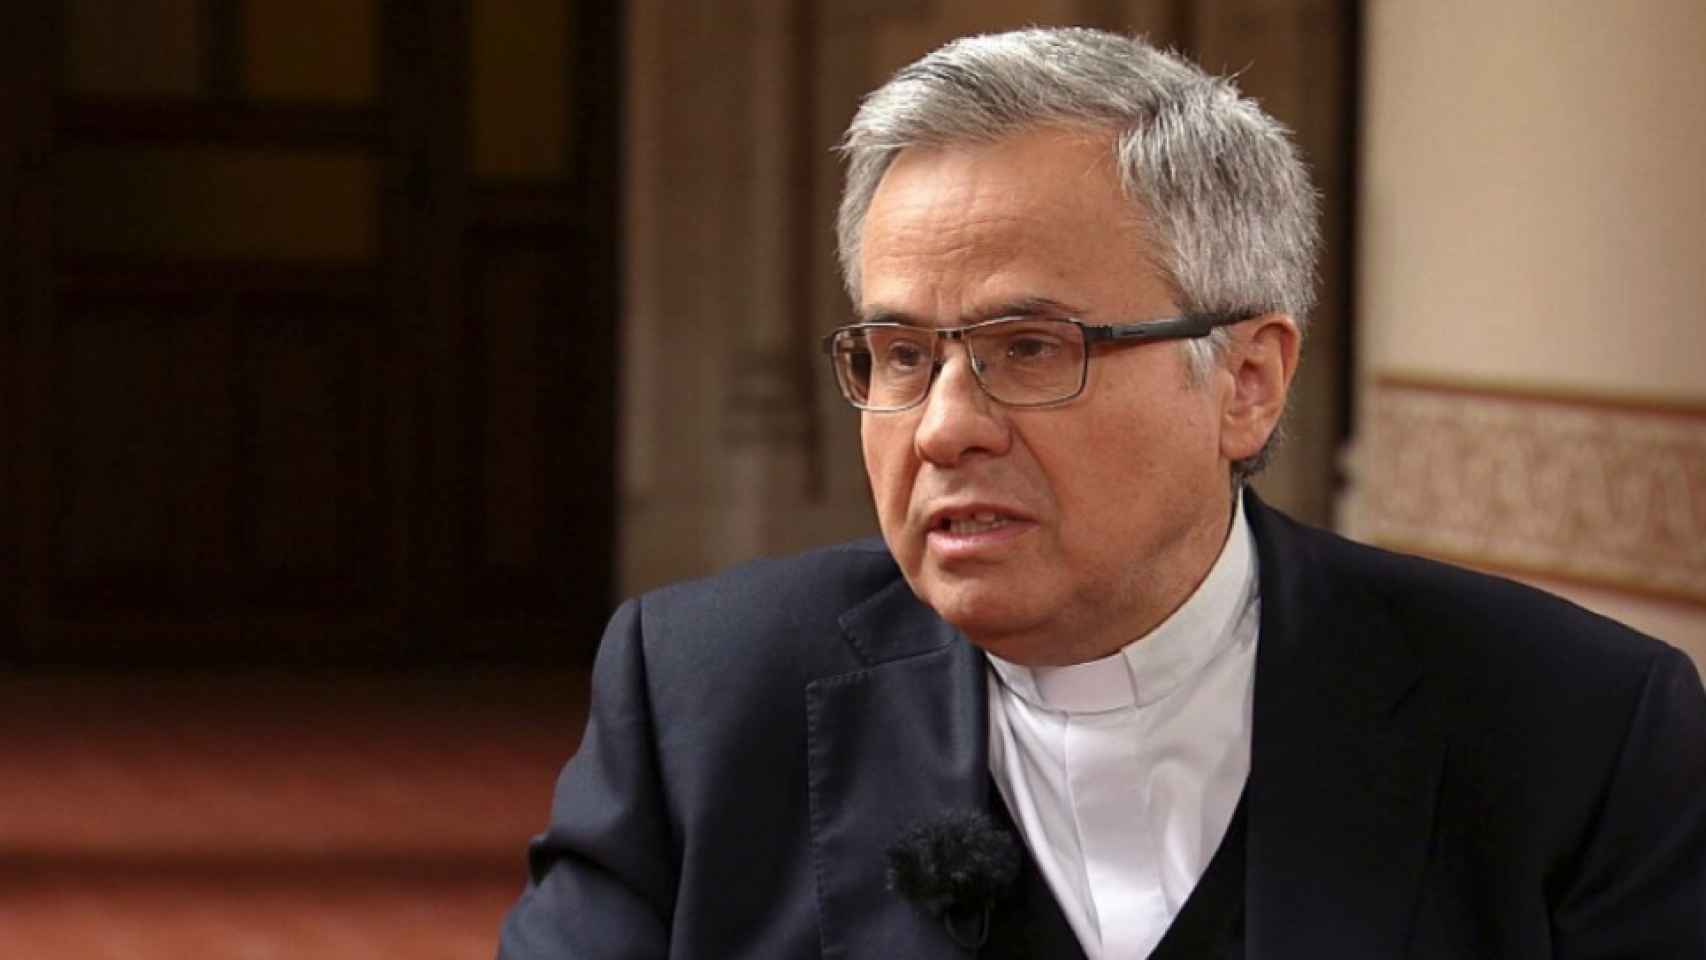 Joan Planellas, el cura que ha rendido la Iglesia a los indepes